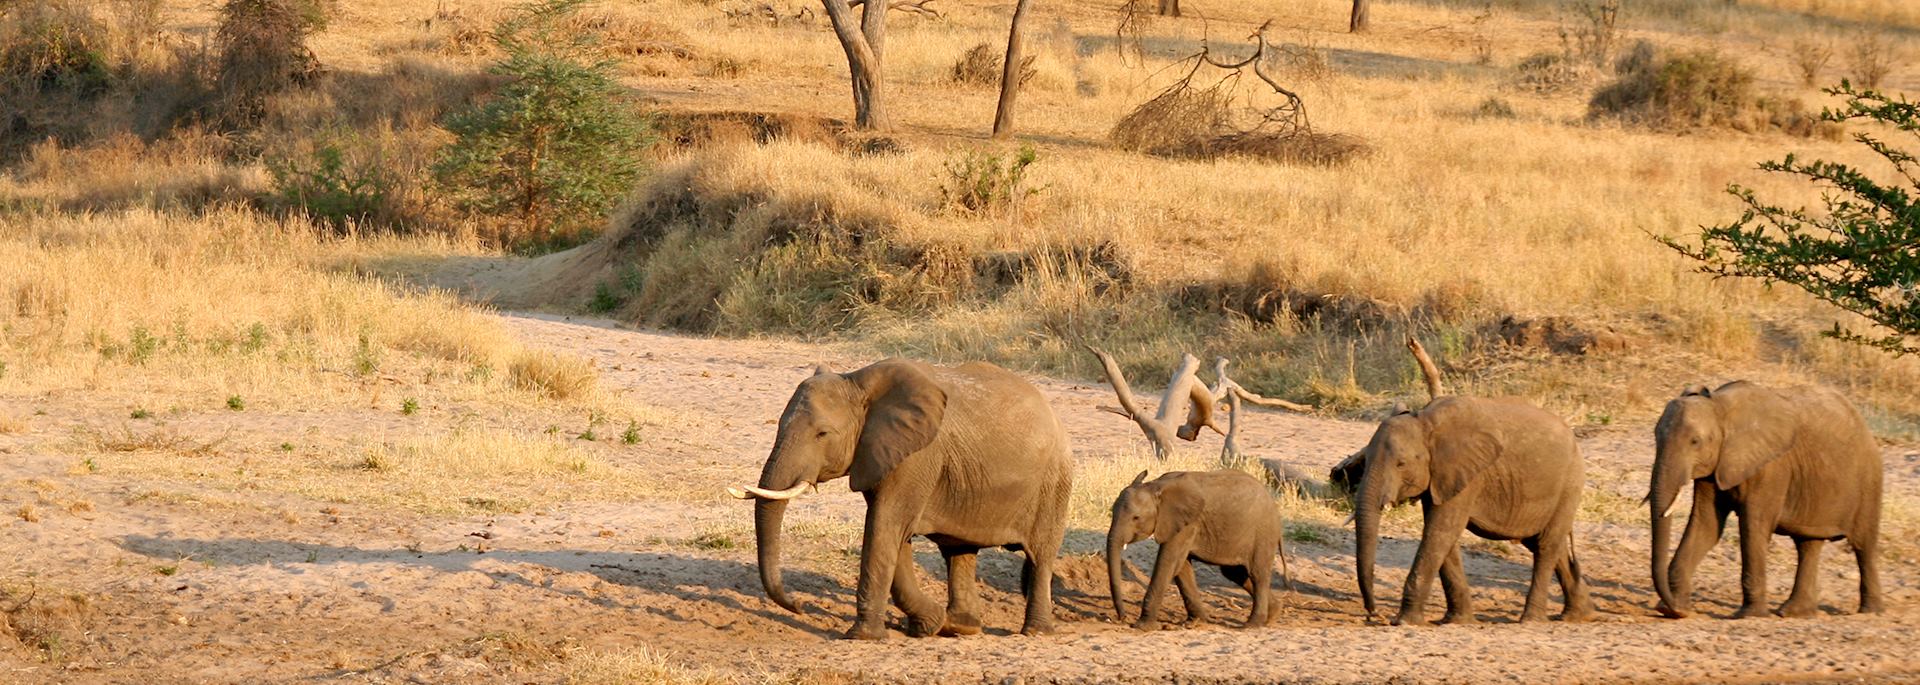 Elephants, Tanzania